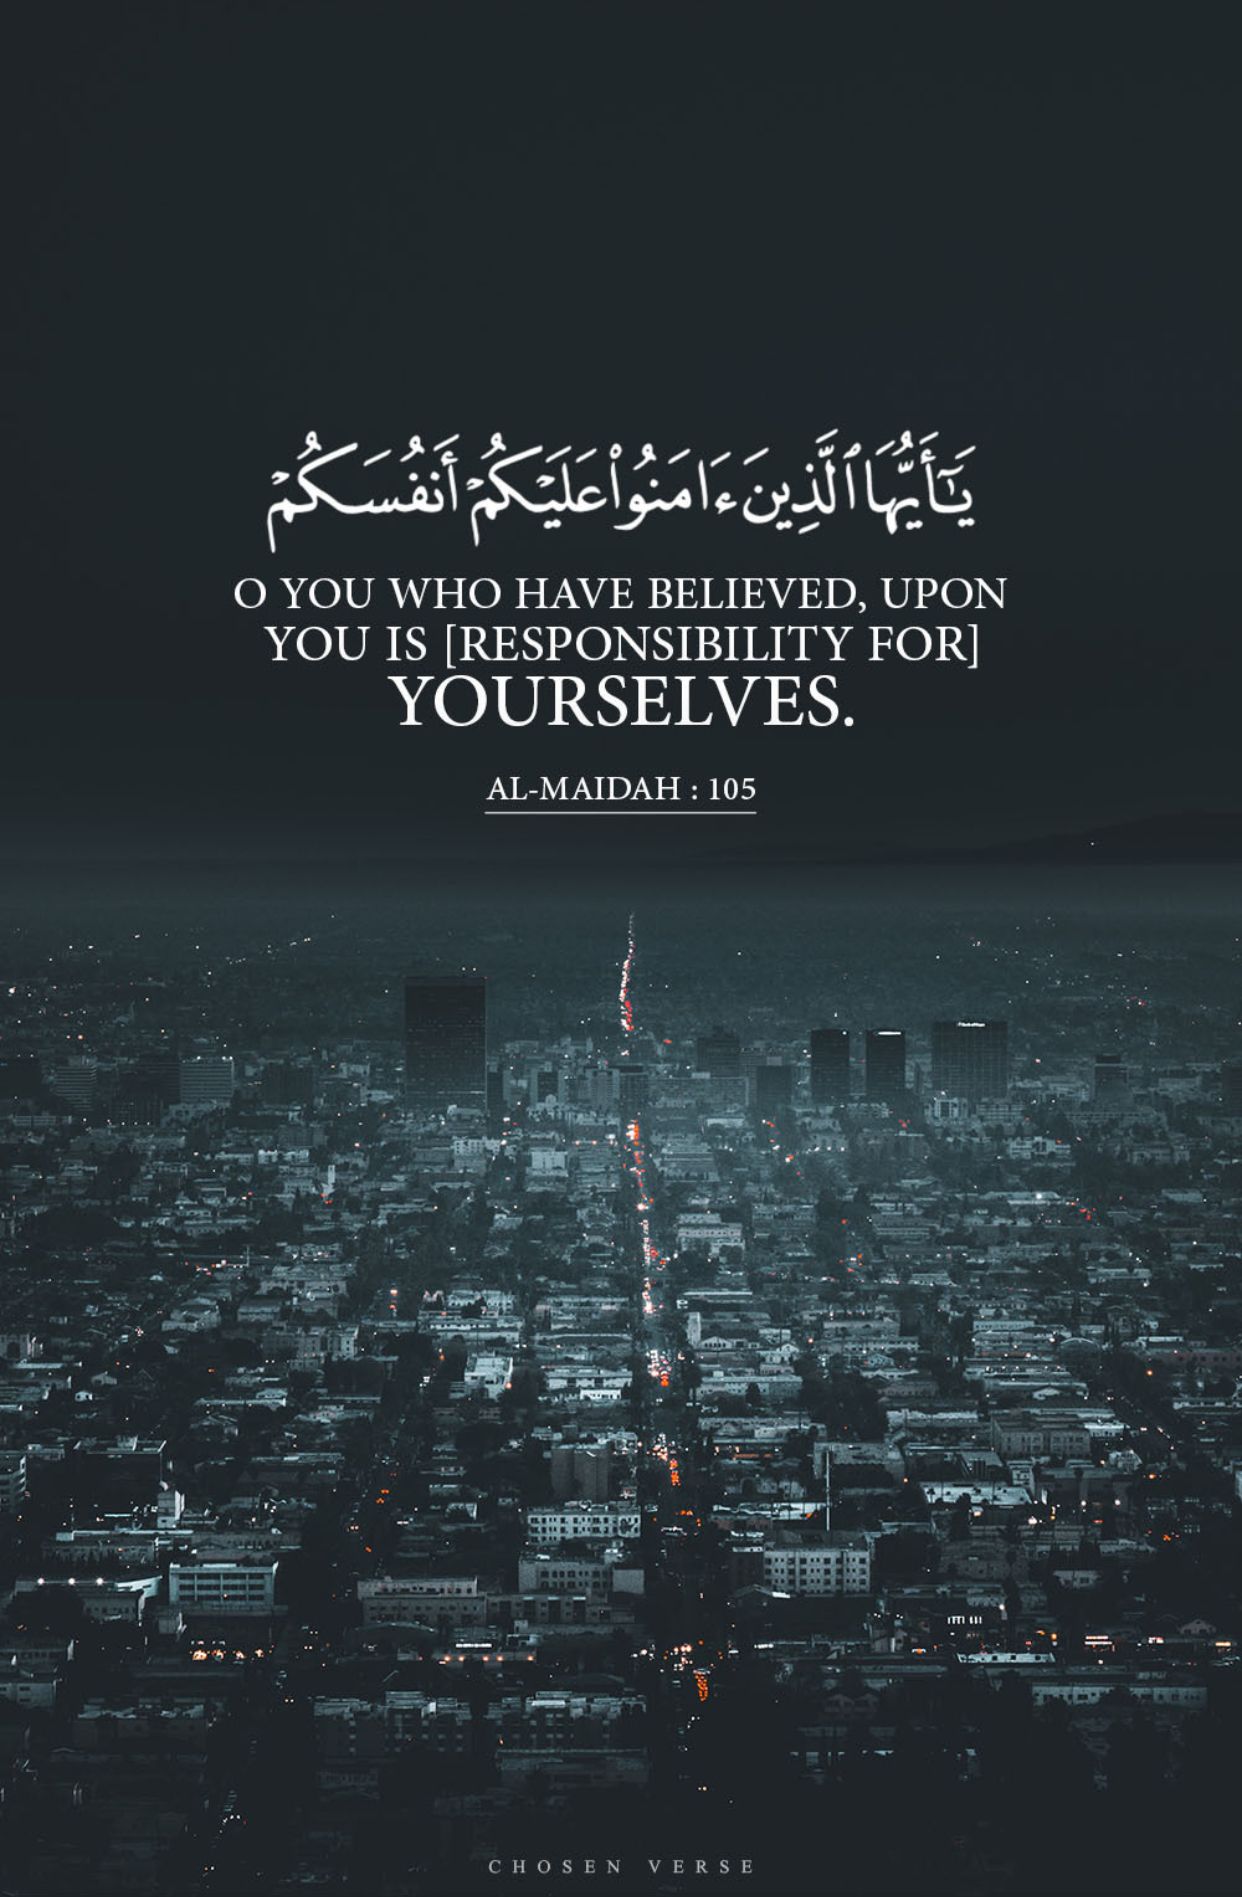 Quran Verses Wallpapers - Wallpaper Cave